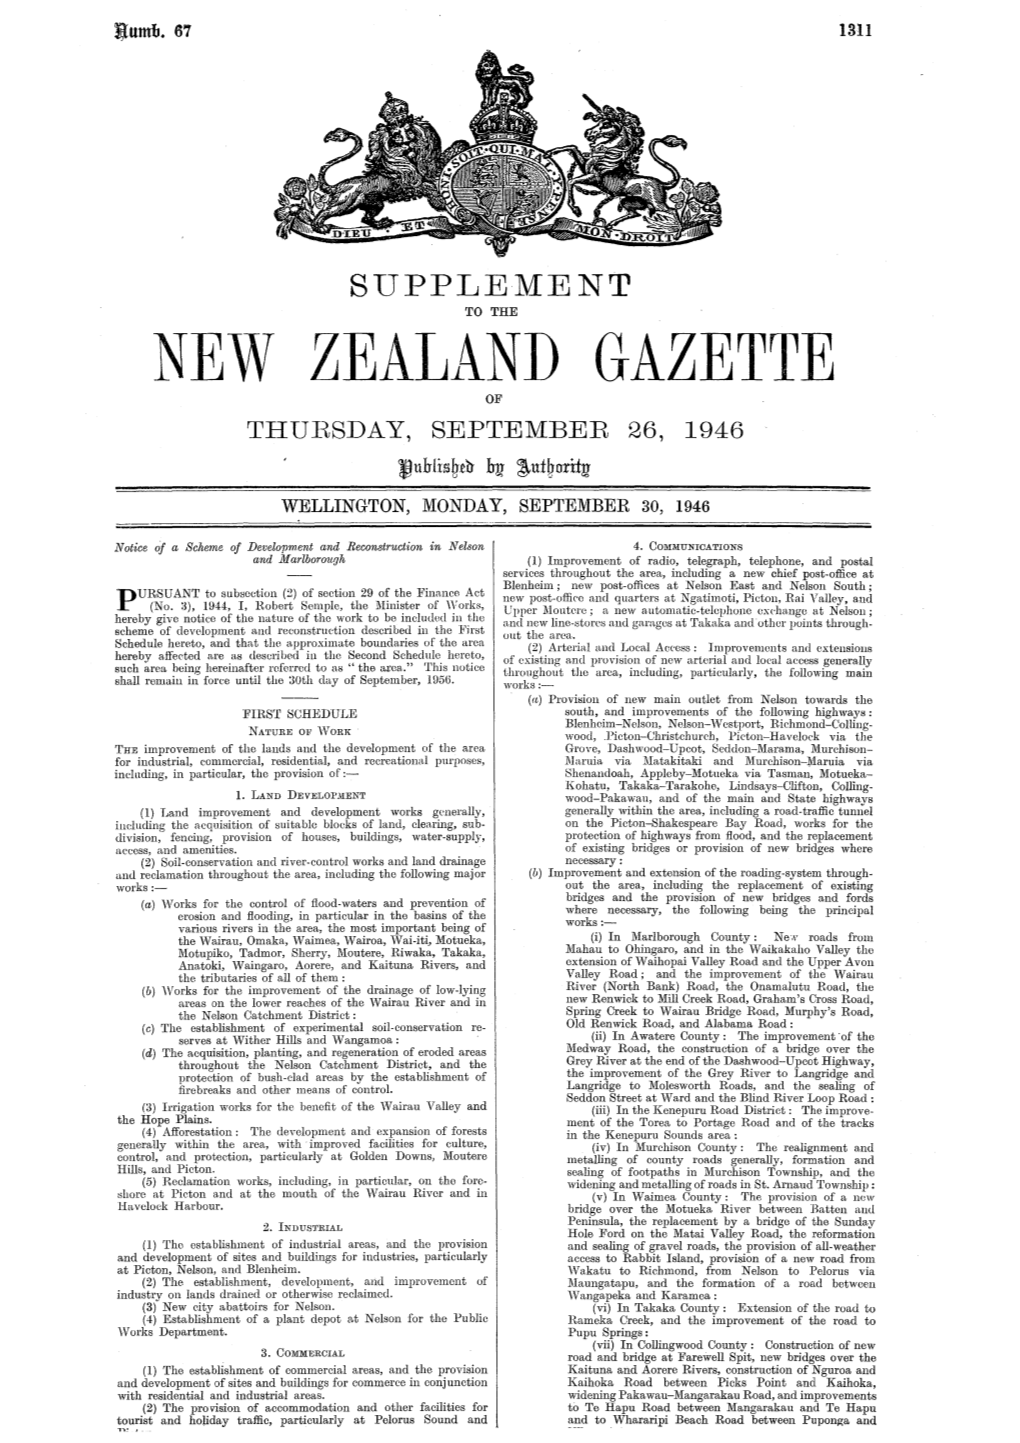 New Zealand Gazette of Thursday, September 26 , 1946